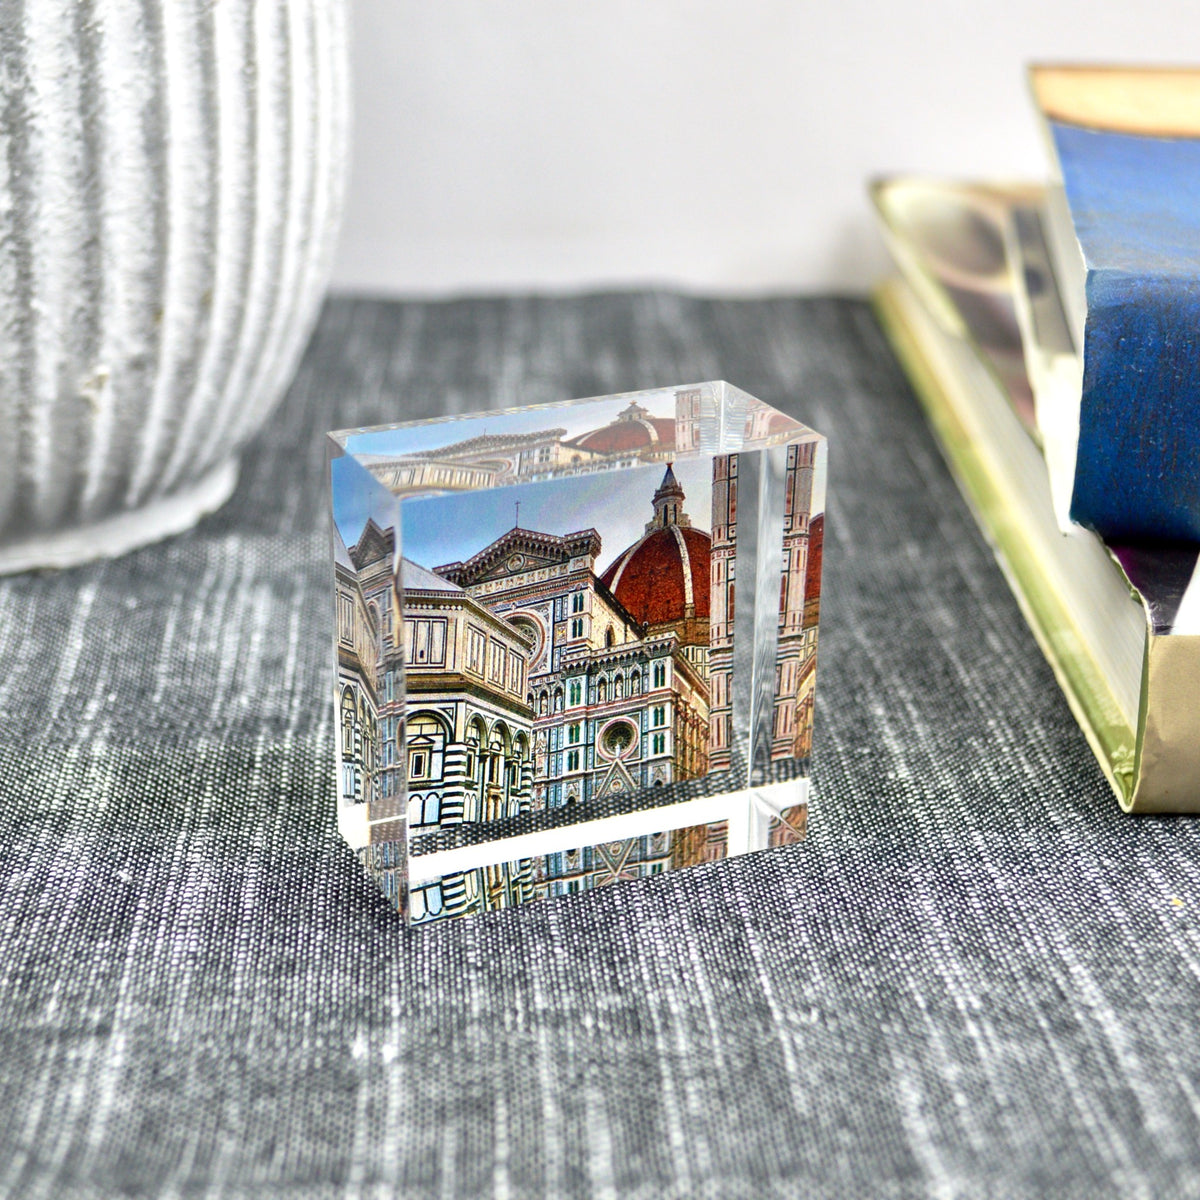 Acrylic Photo Cube, Authentic Photos From Italy - My Italian Decor